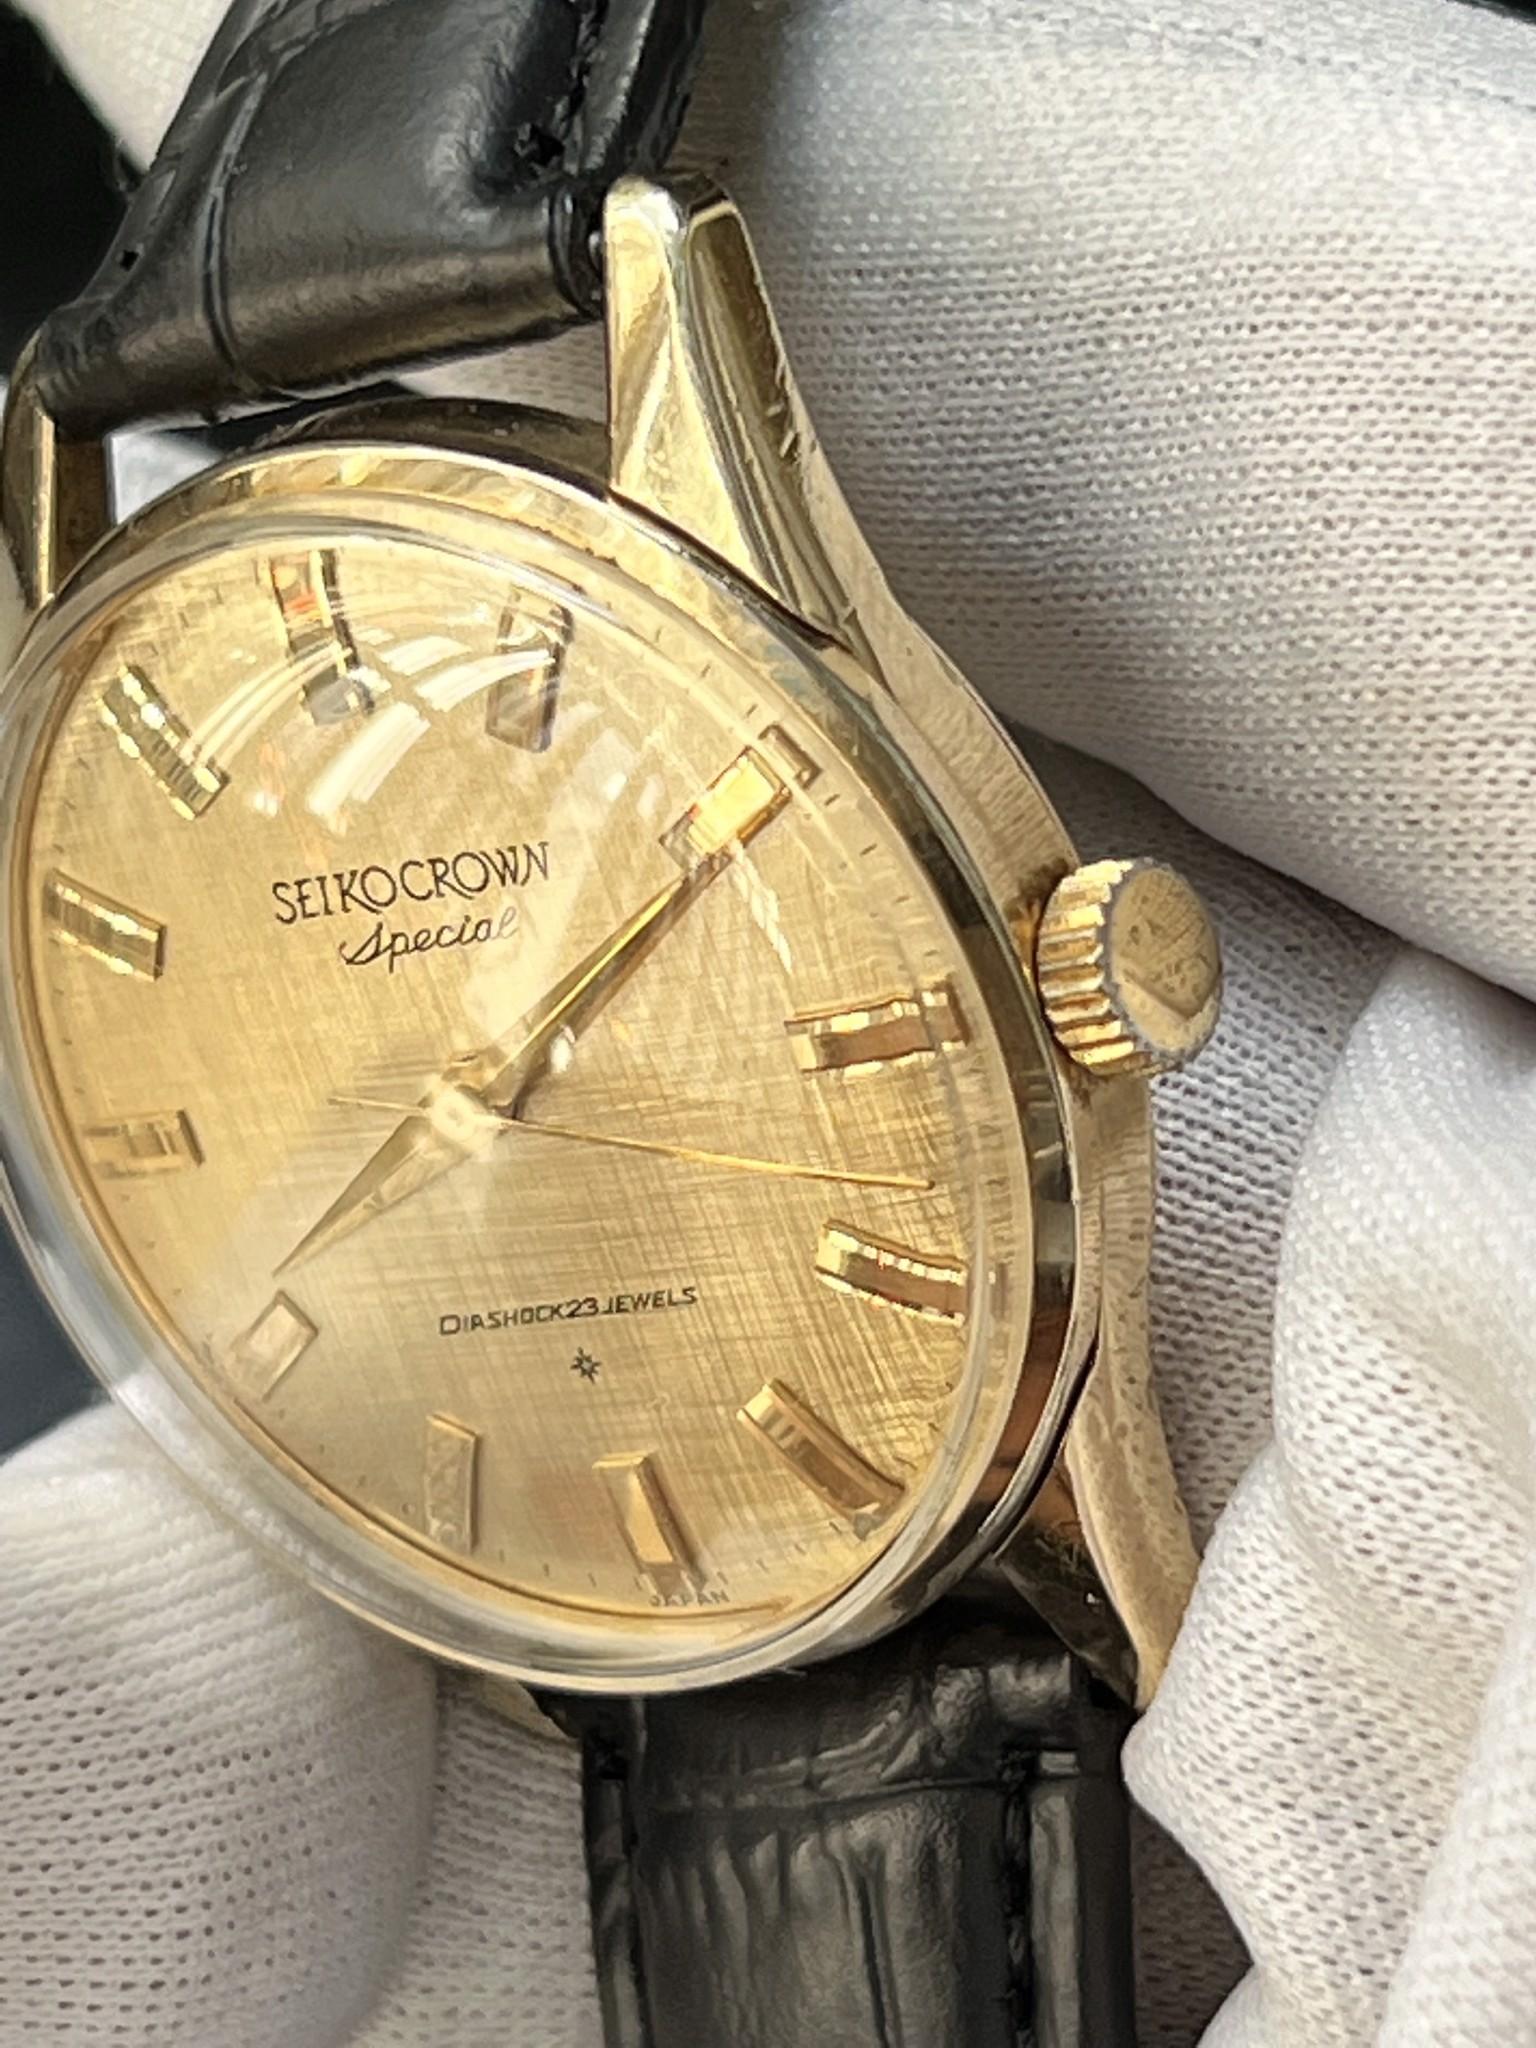 SEIKO CROWN special – đồng hồ cổ tịnh tâm shop